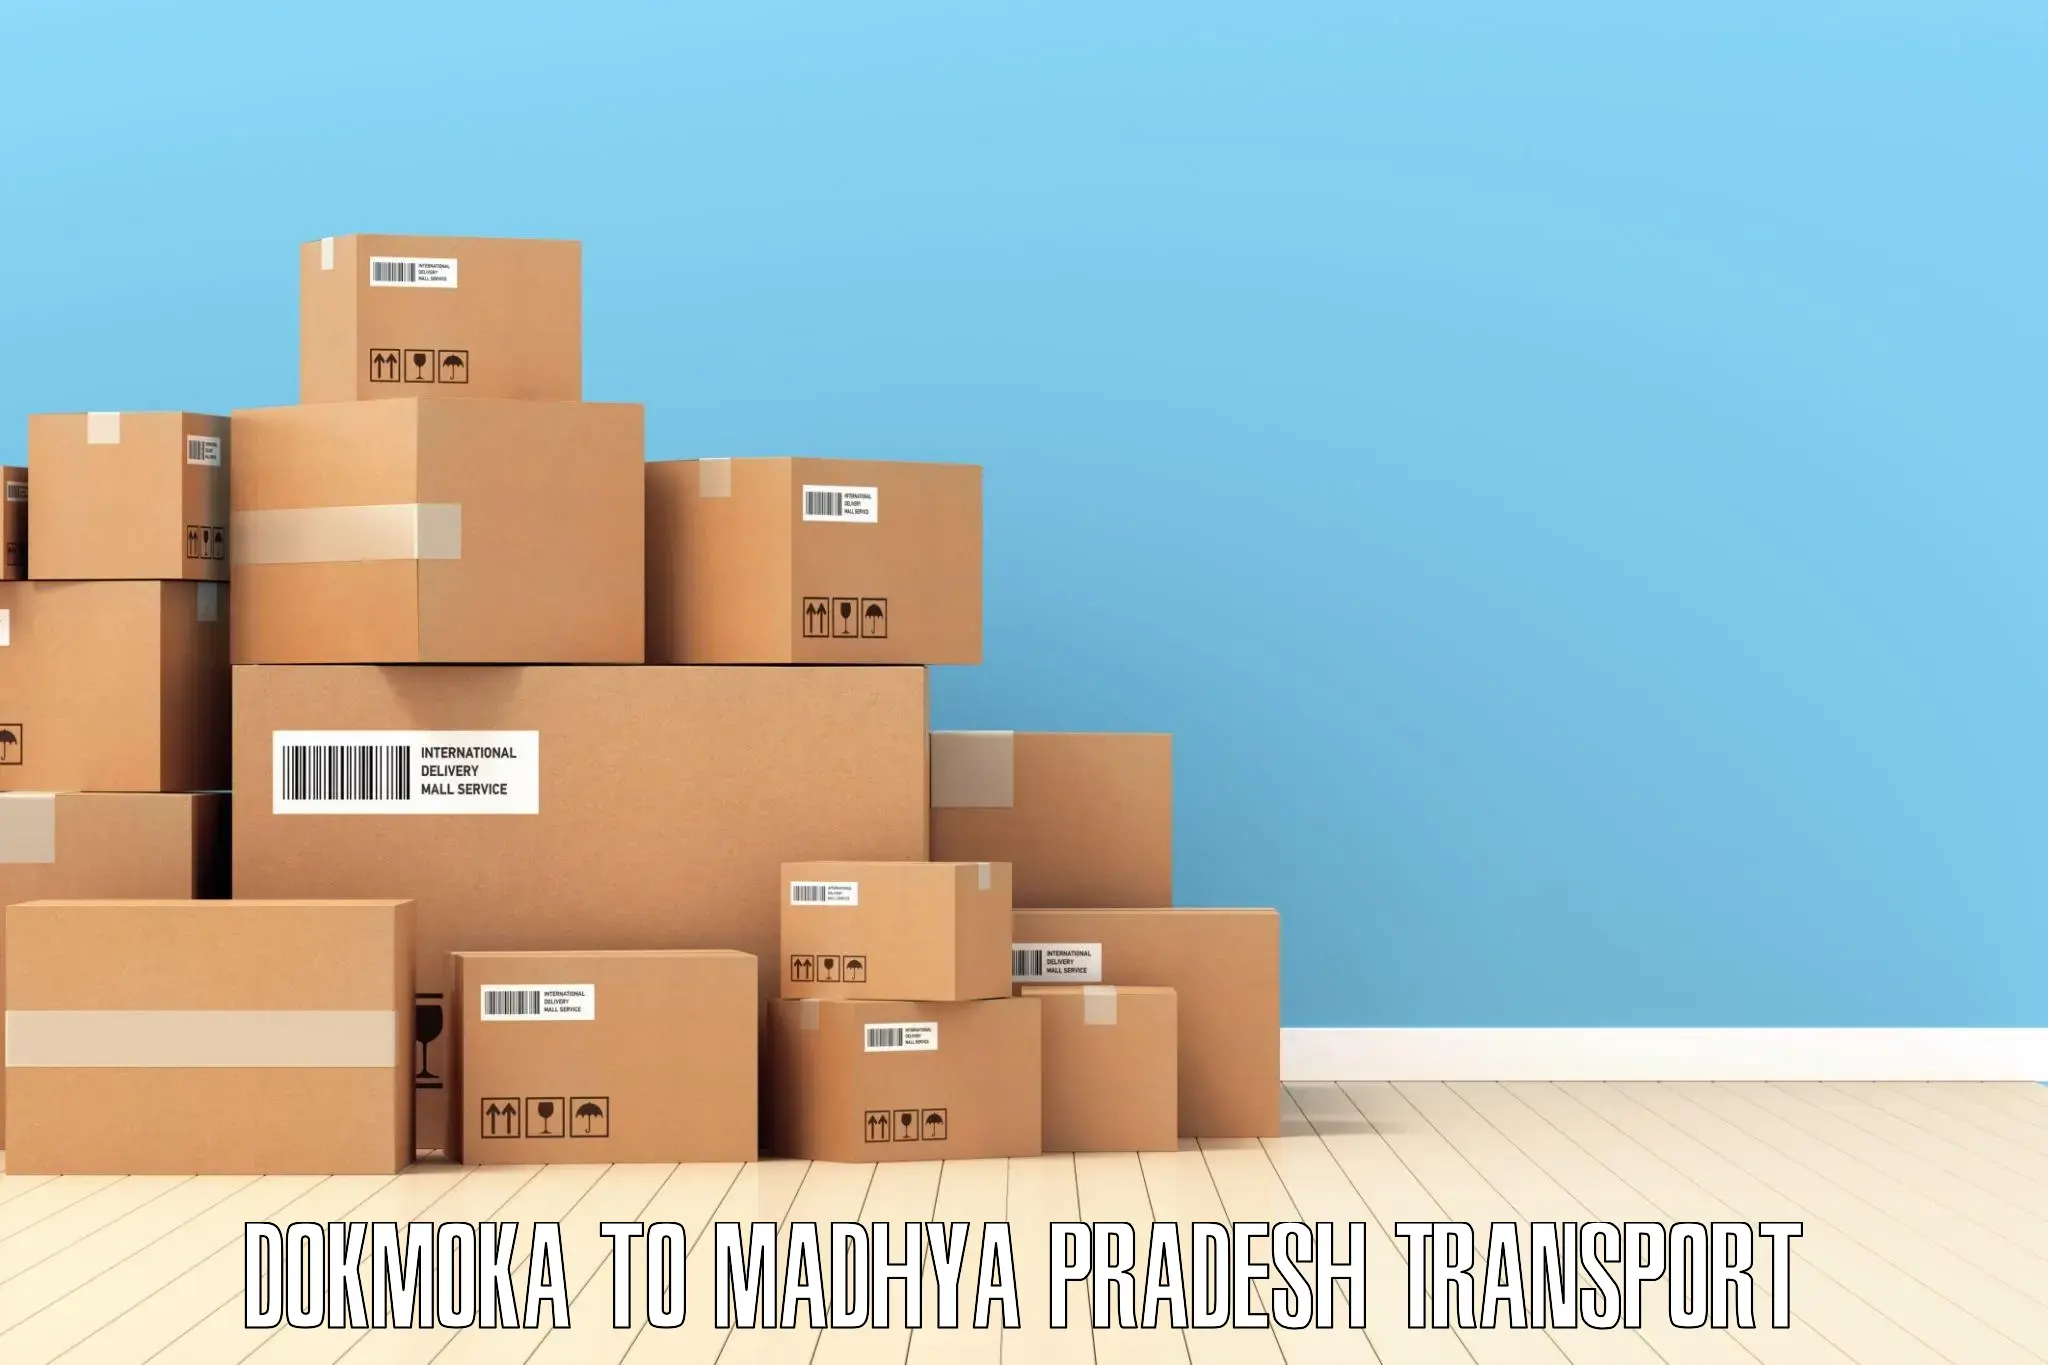 Daily parcel service transport Dokmoka to Manasa